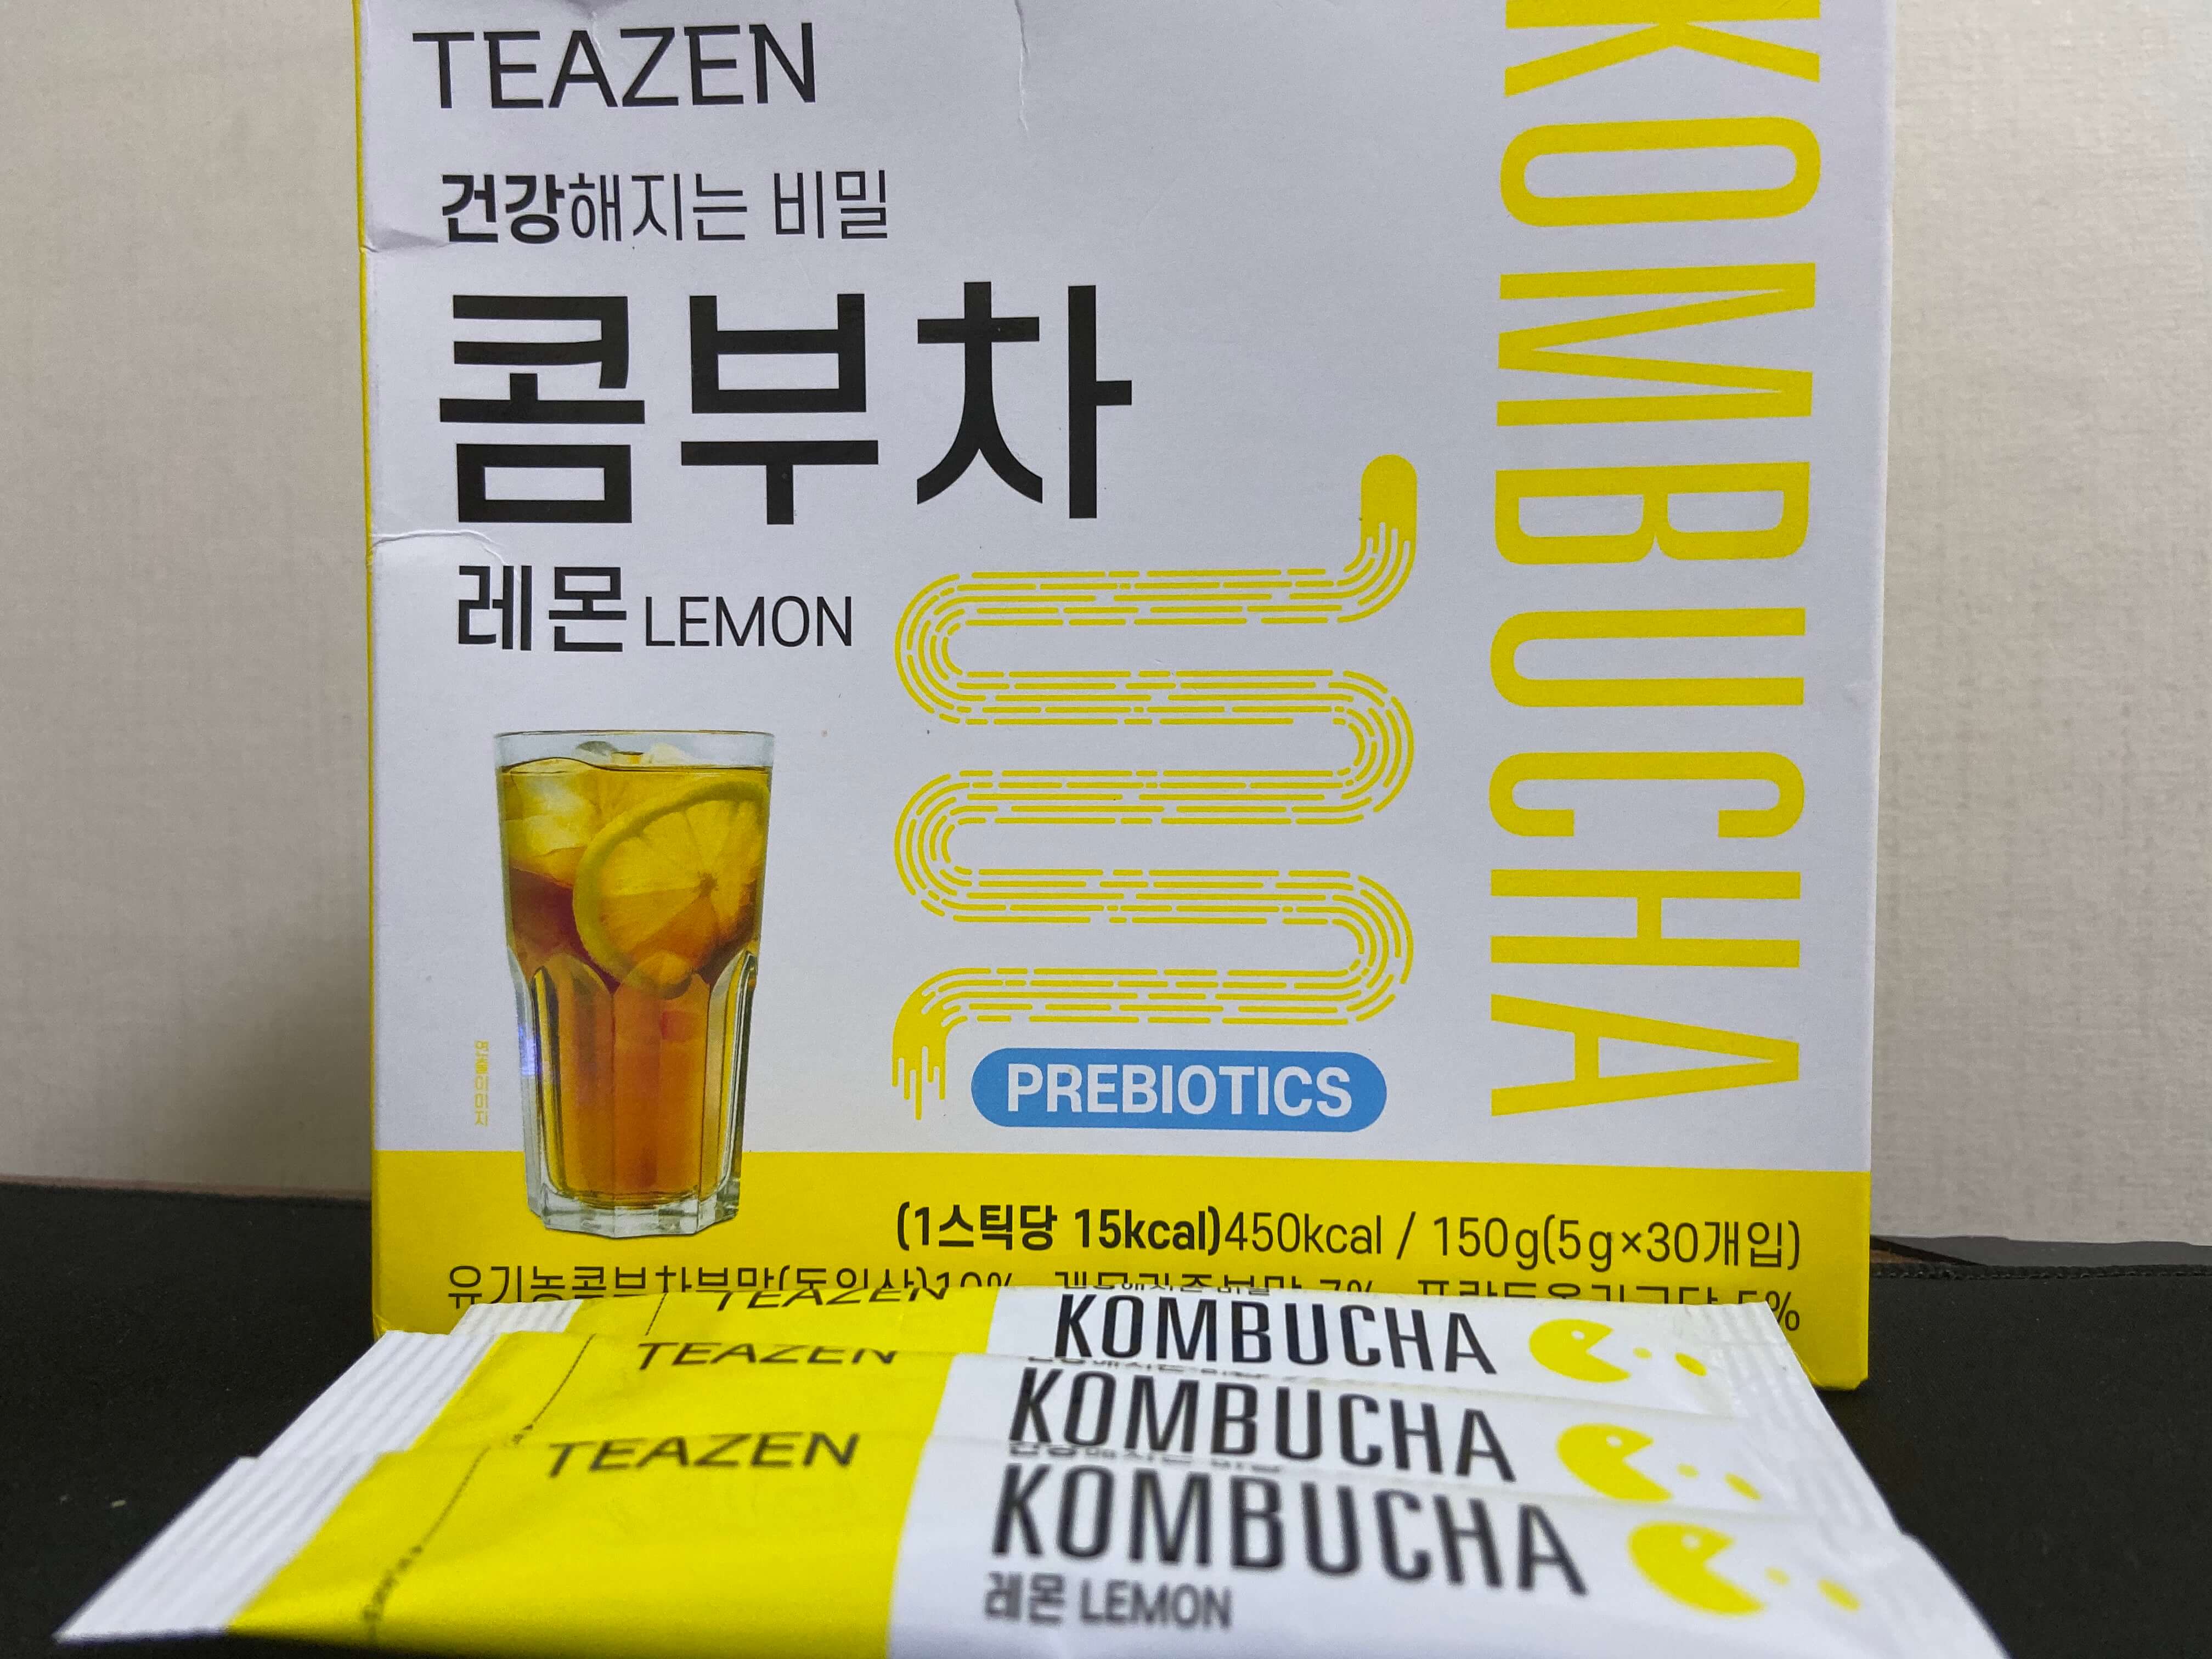 티젠 콤부차 레몬 박스와 개별 제품 사진